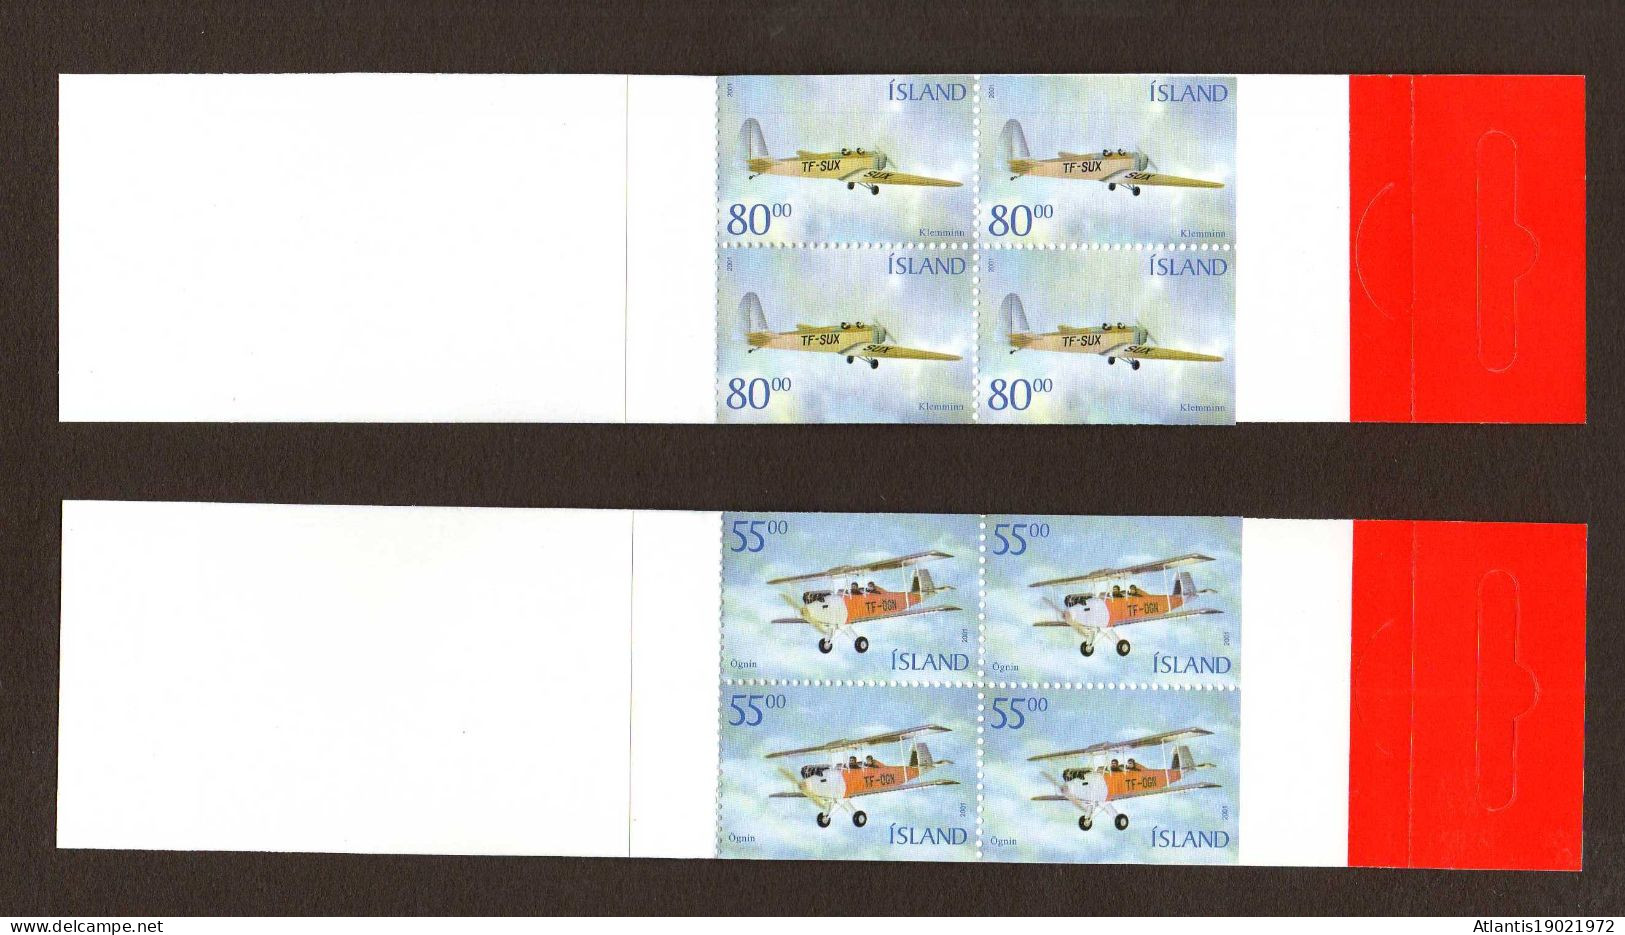 2 MARKENHEFTCHEN ISLAND HISTORISCHE FLUGZEUGE 2001 POSTFRISCH - Carnets